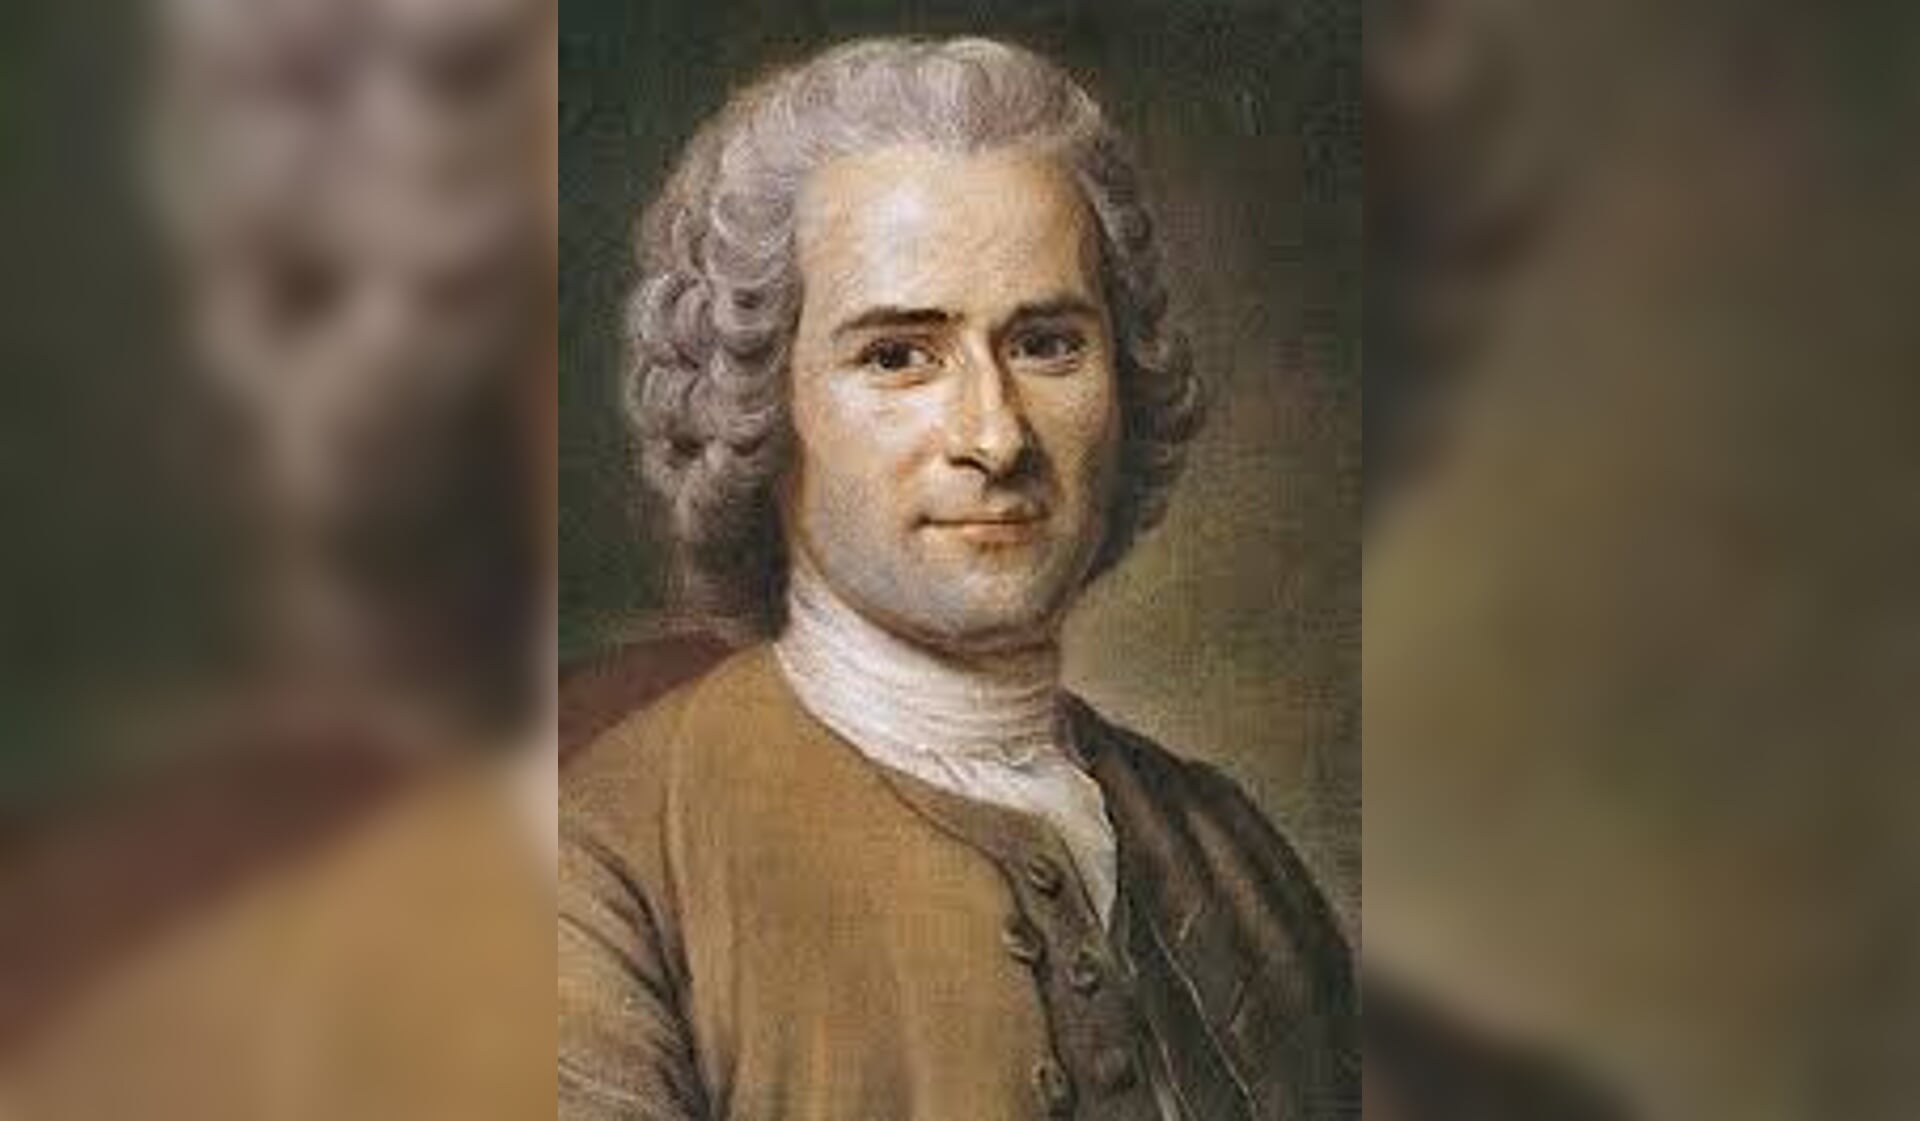 Jean-Jacques Rousseau.